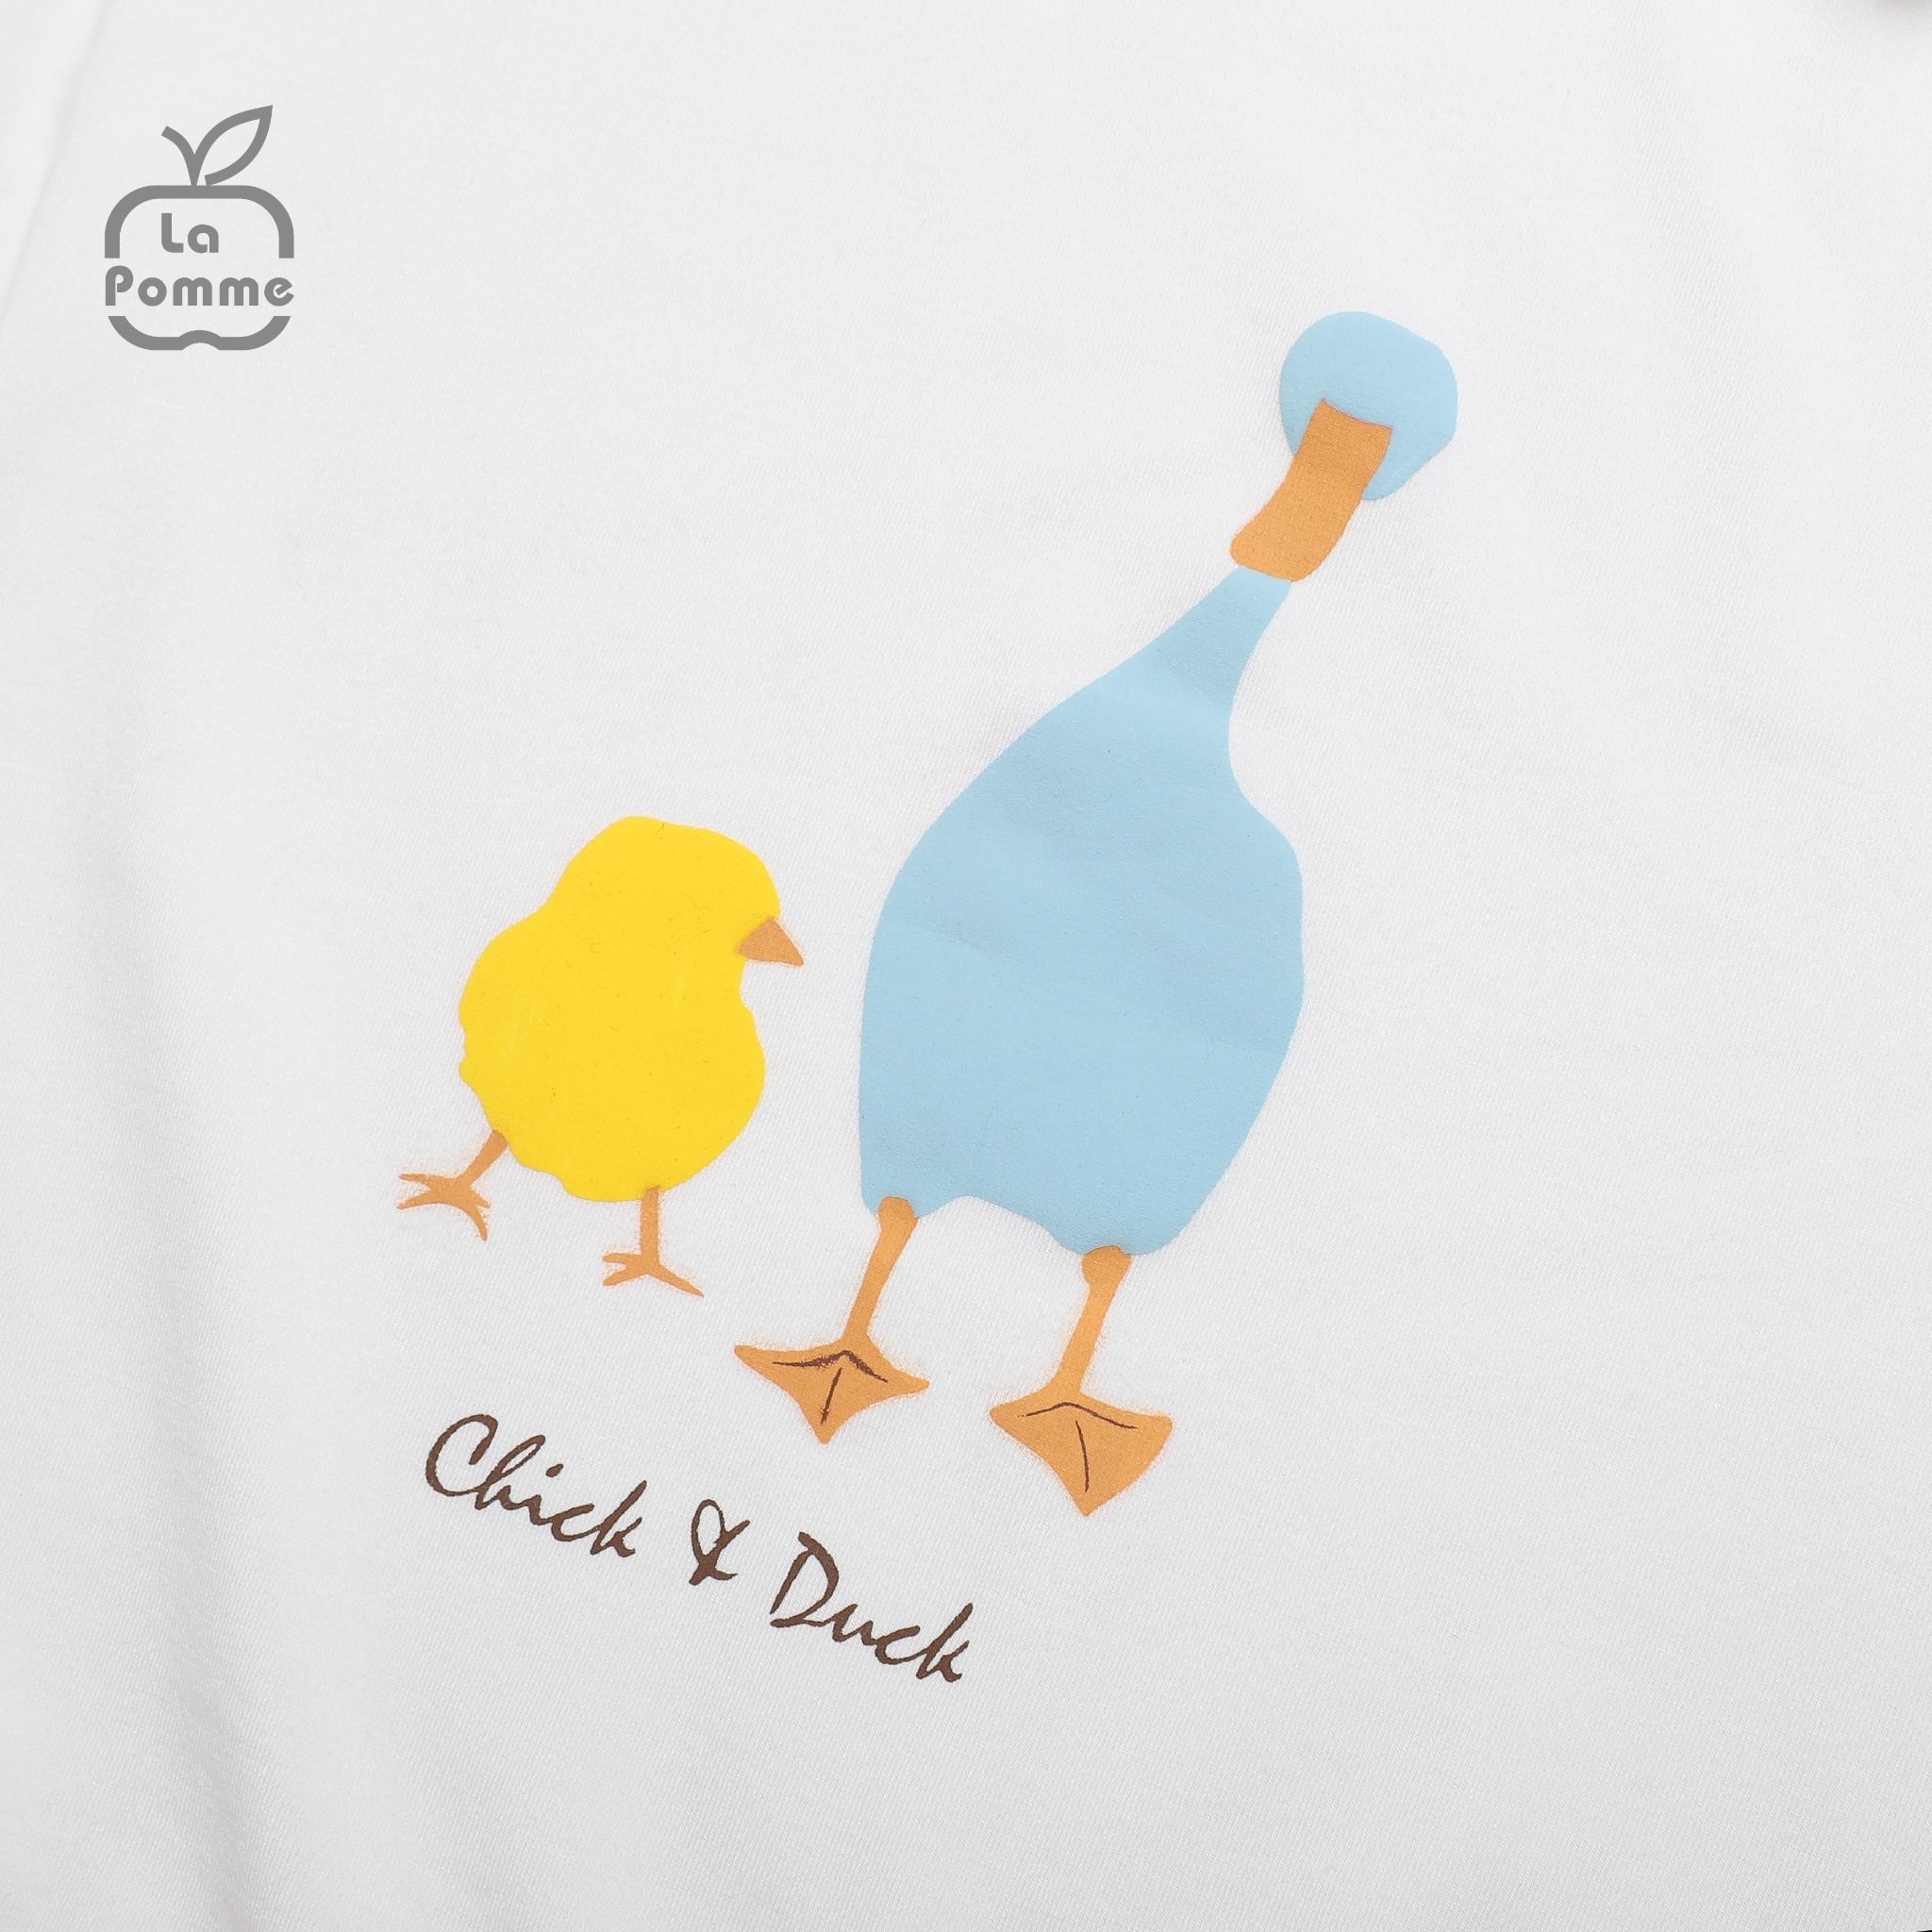  SL226 Bộ dài tay Chick & Duck La Pomme - Xanh 